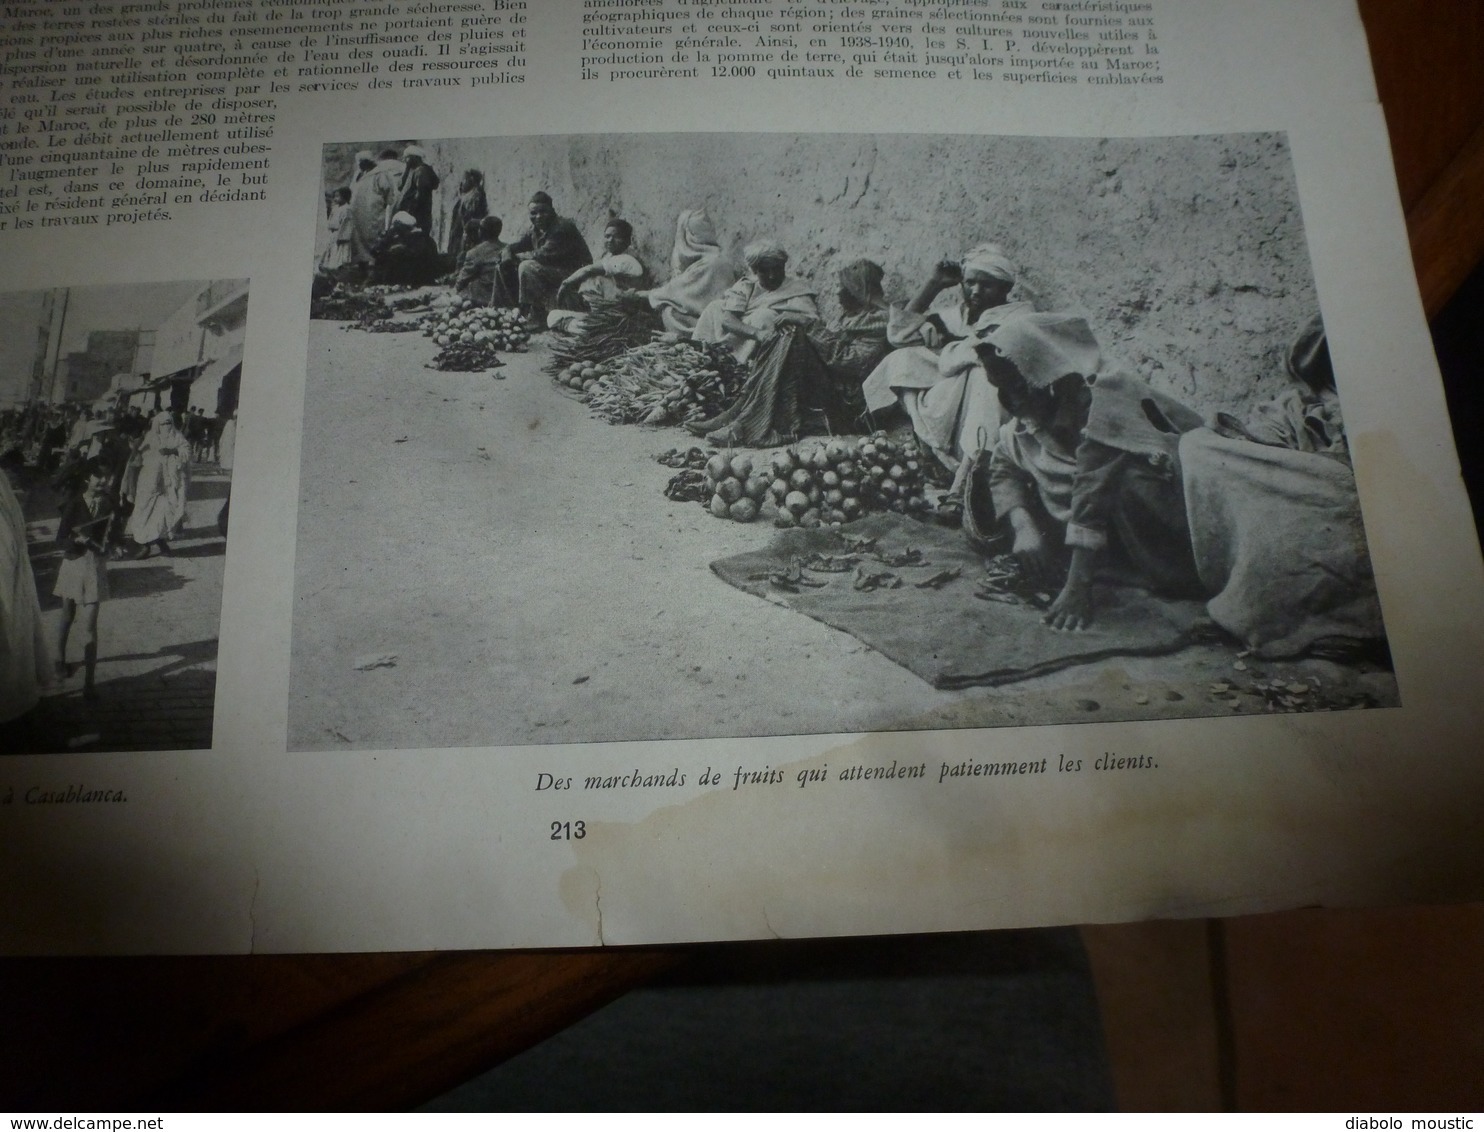 1942 L'ILLUSTRATION :Vie au Maroc (Casablanca,Fez,Rabat,etc); Kertch;Français décorés de la Croix de Fer par Hitler;etc